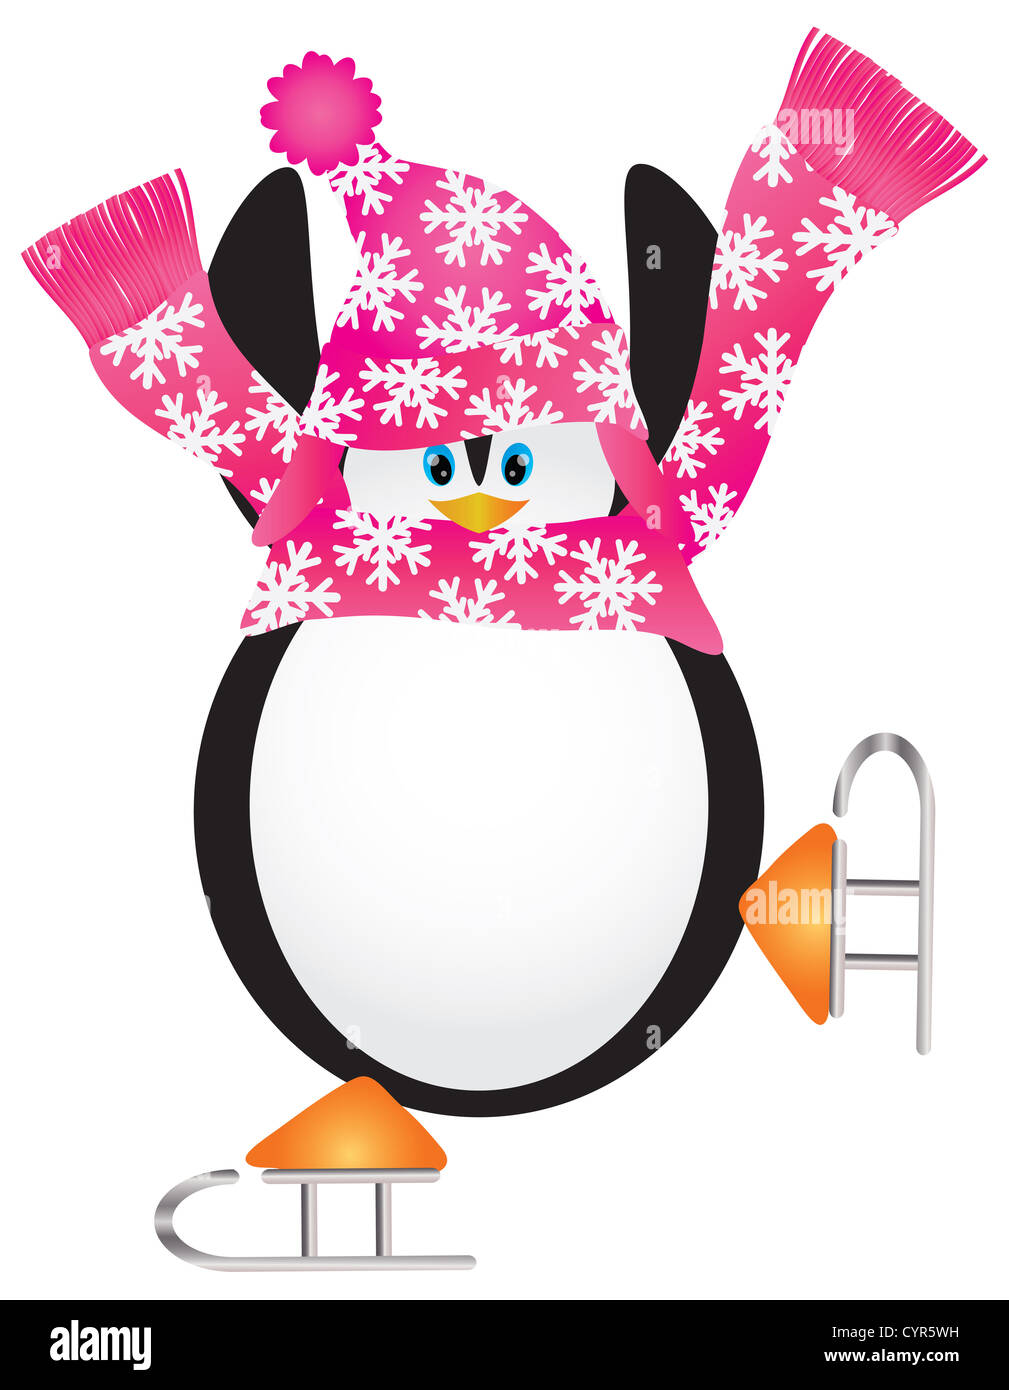 Pingouin de Noël avec bonnet et écharpe rose Patinage sur glace faisant la pirouette Illustration Banque D'Images